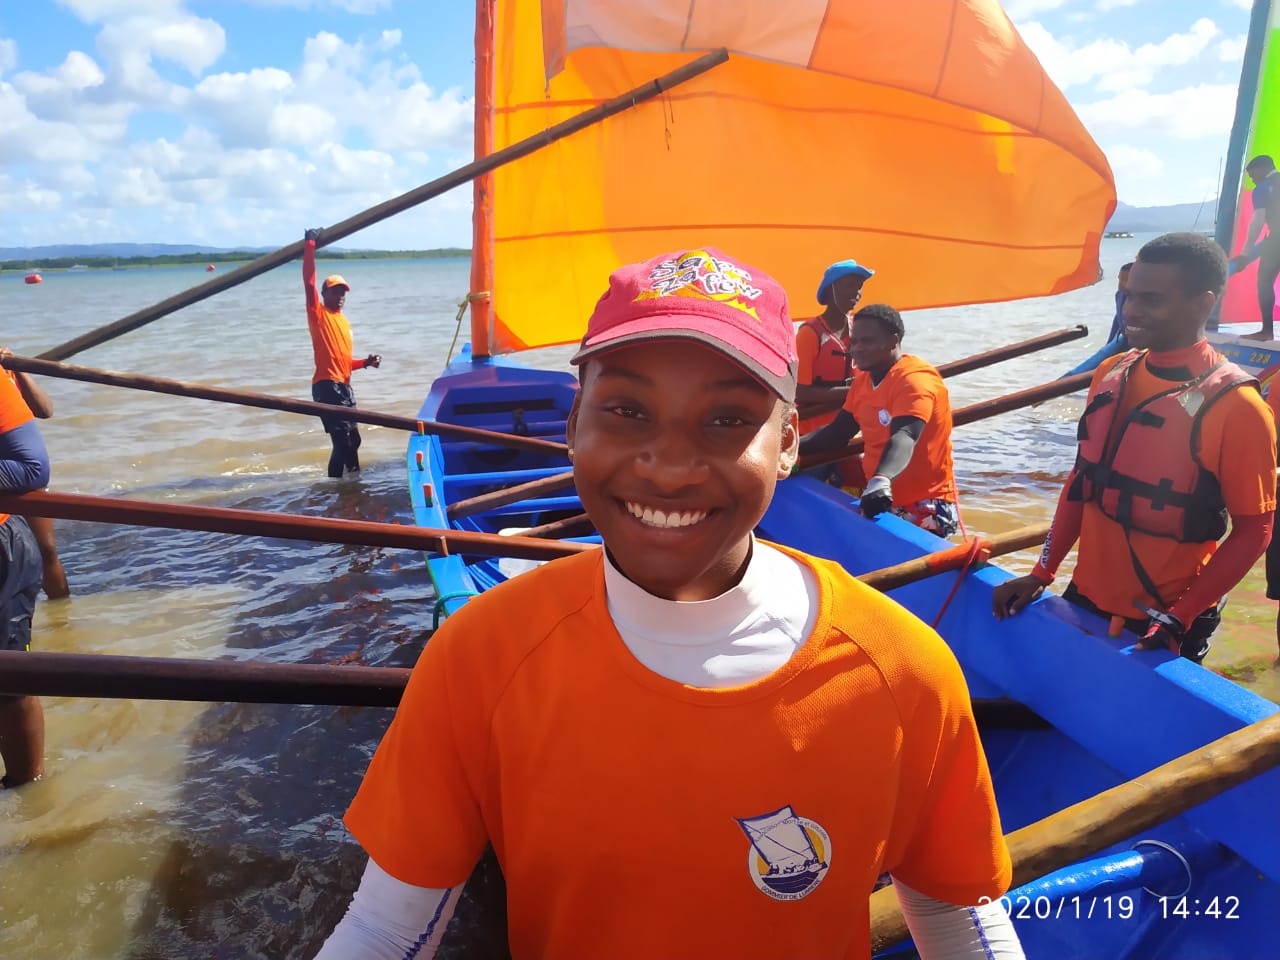     Portrait du jour : passionnée d'activité nautique, Maïlys Soleil est mise à l'honneur

